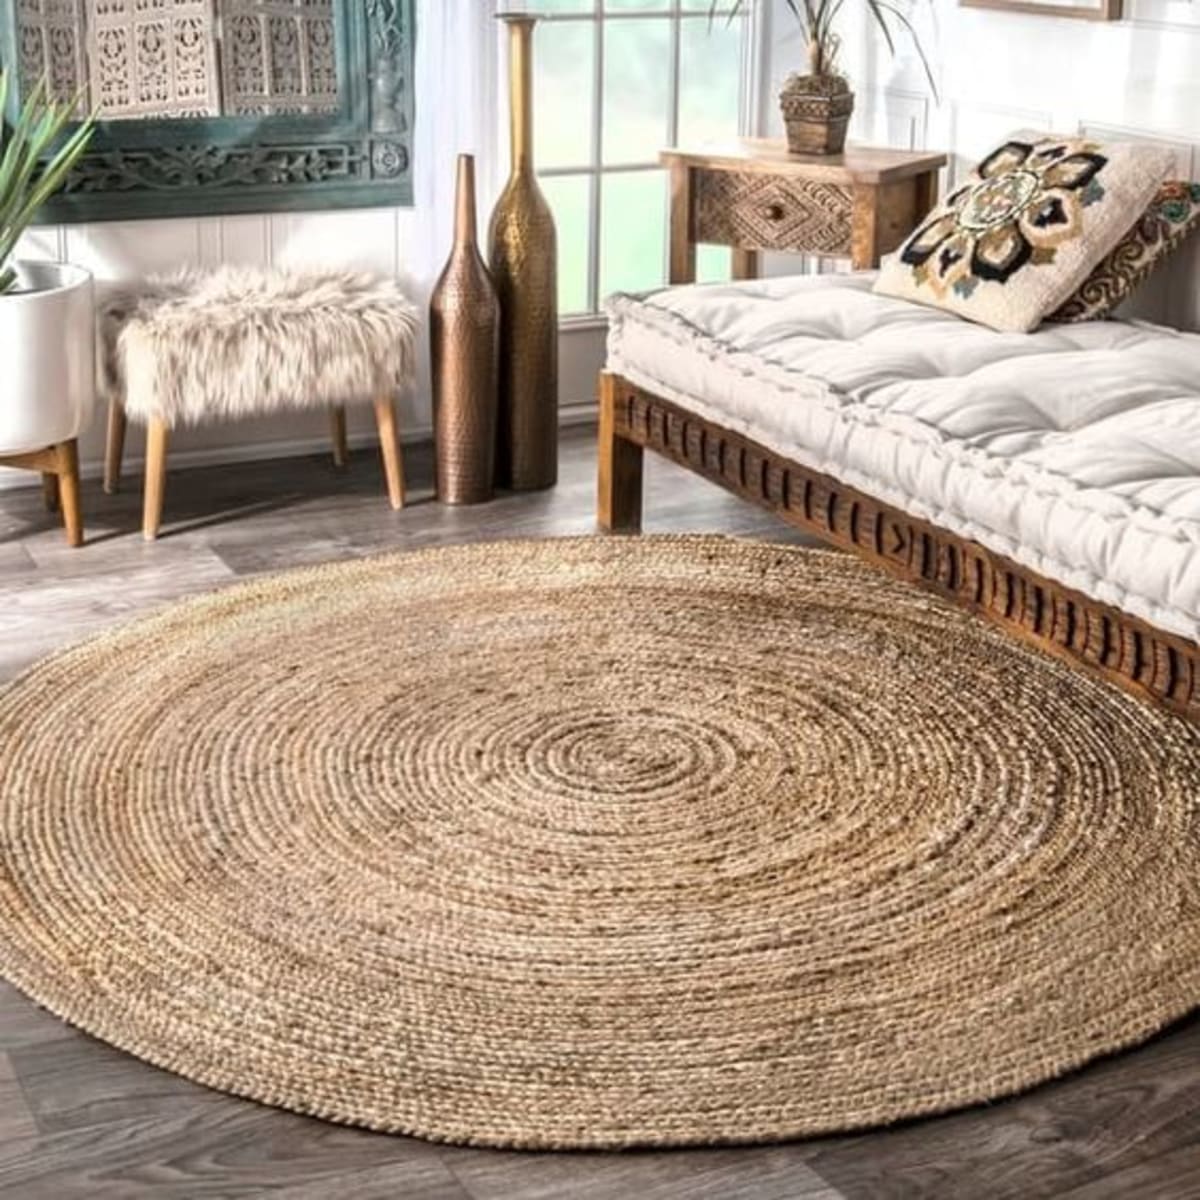 tapete feito de sisal